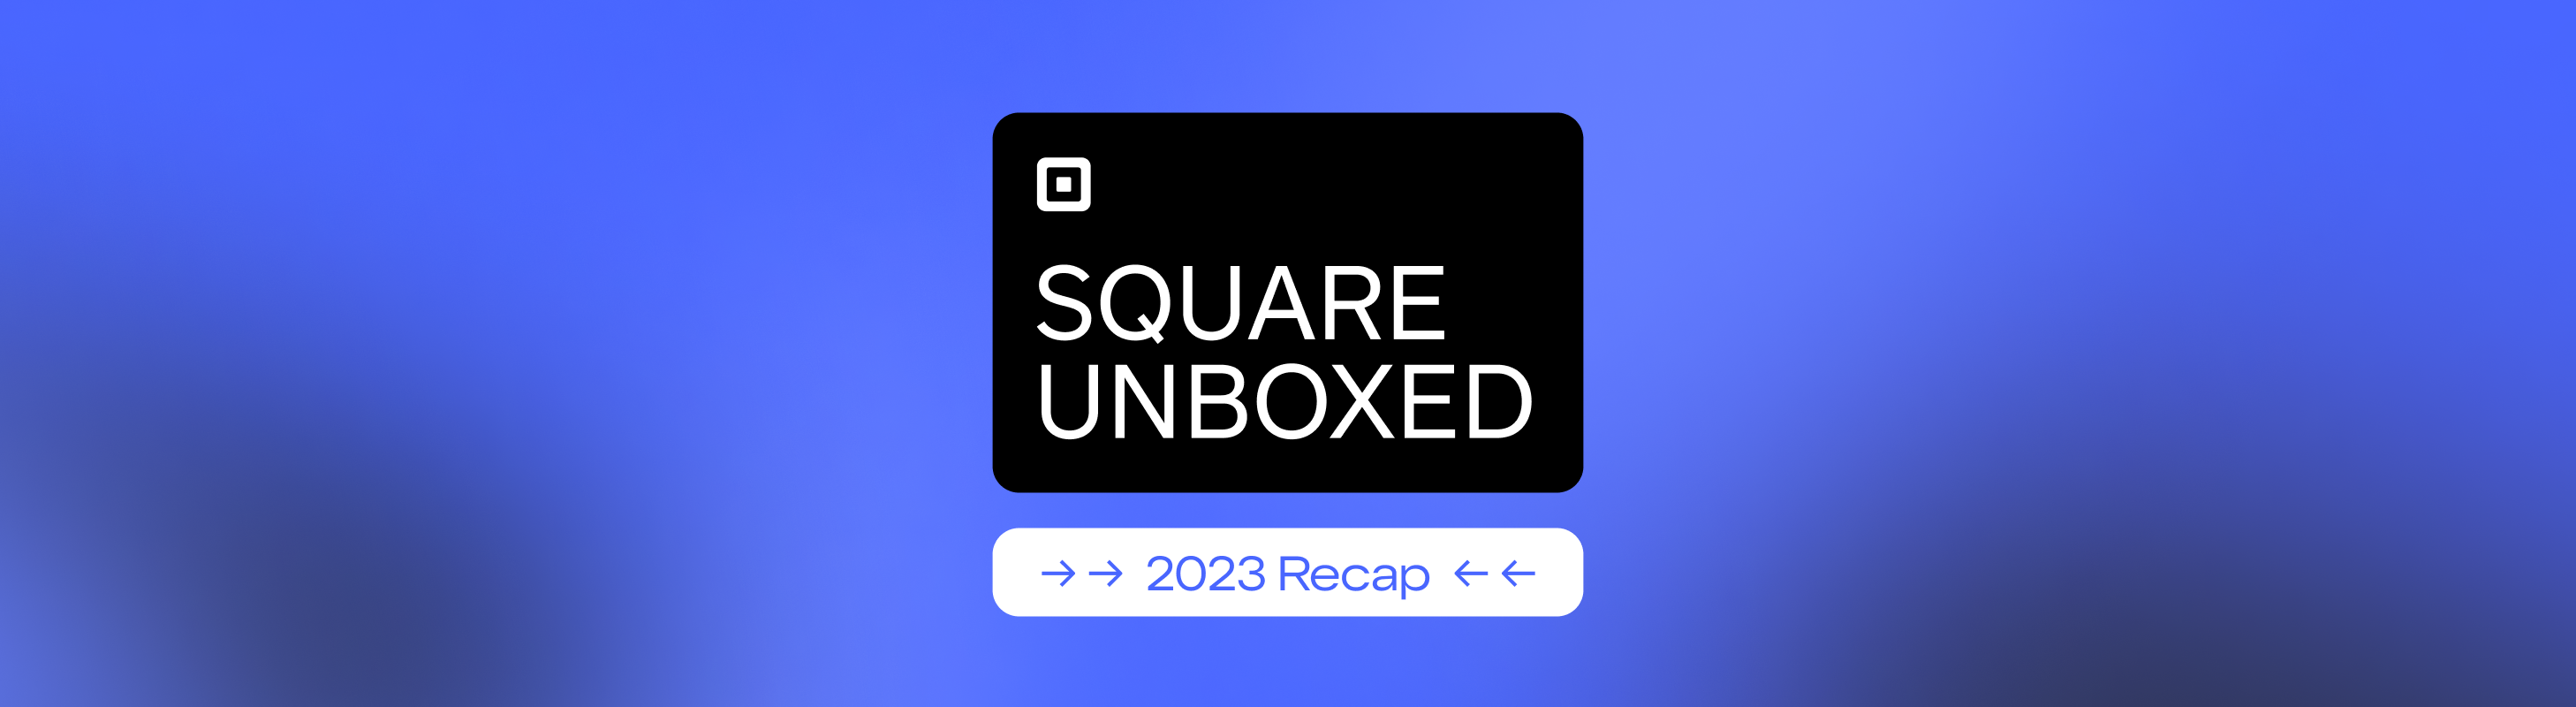 Recap Square Unboxed 2023 Square Corner Blog